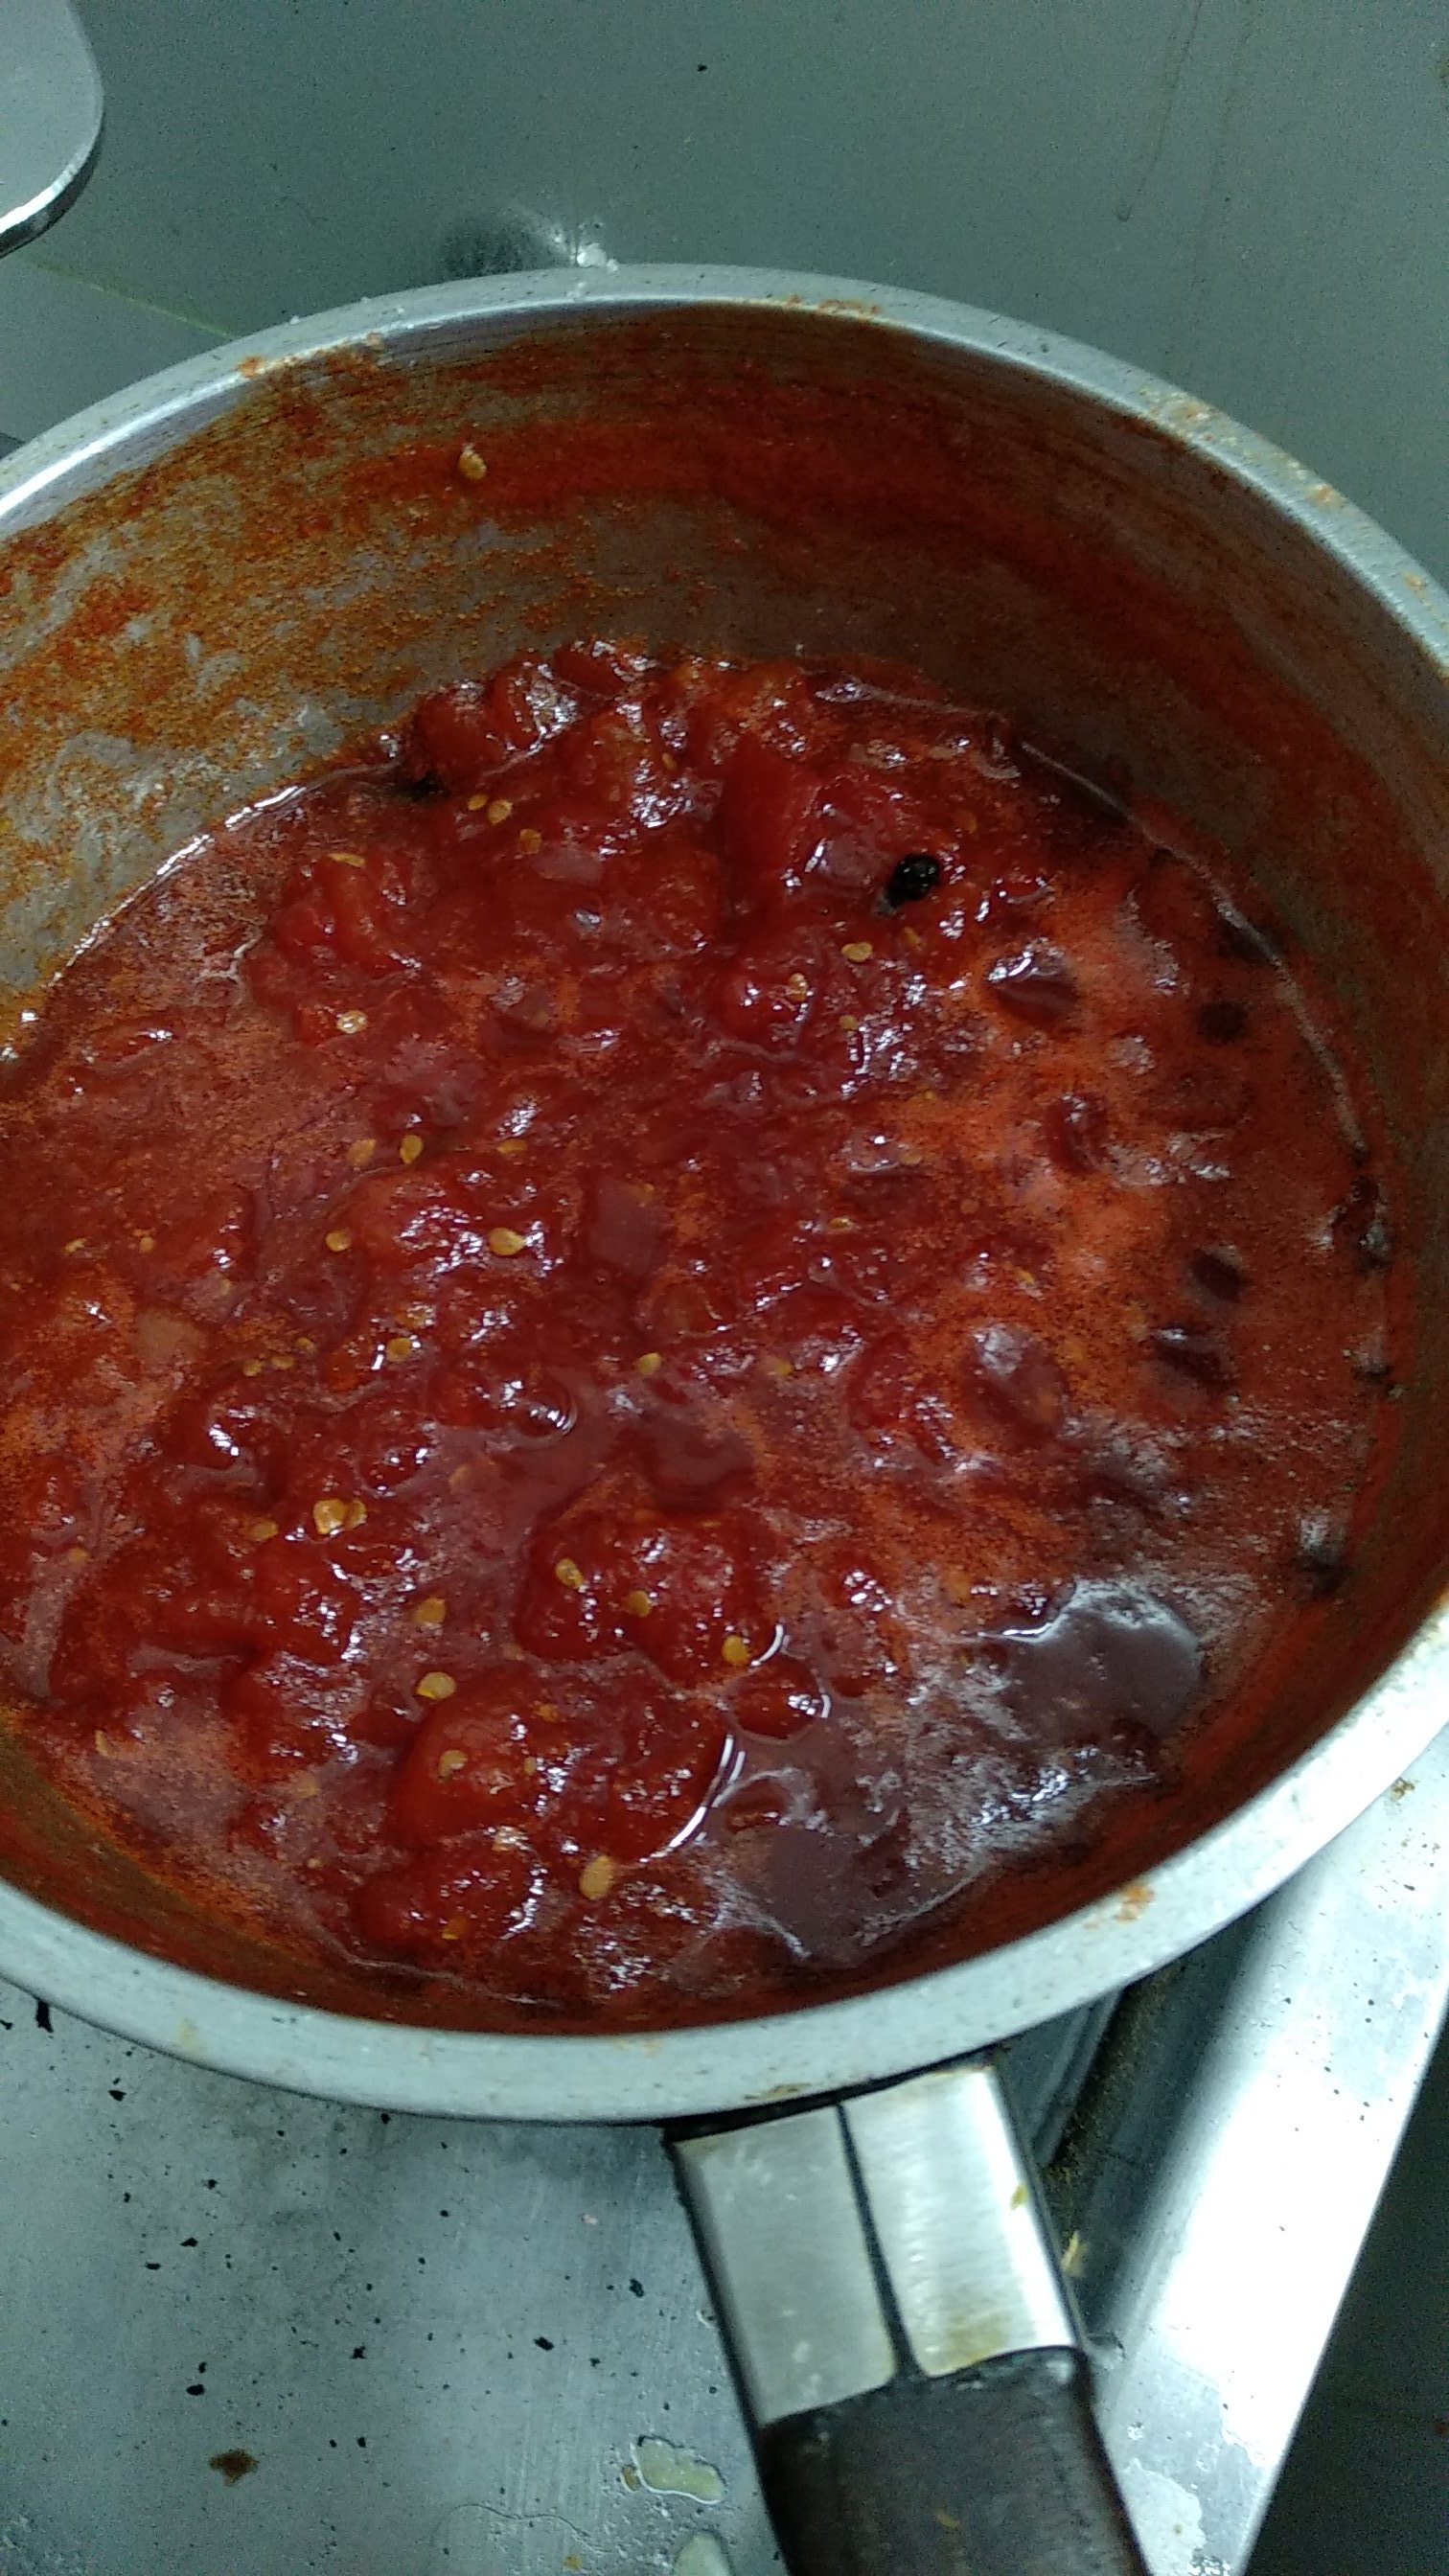 Mermelada de tomate en proceso en una olla